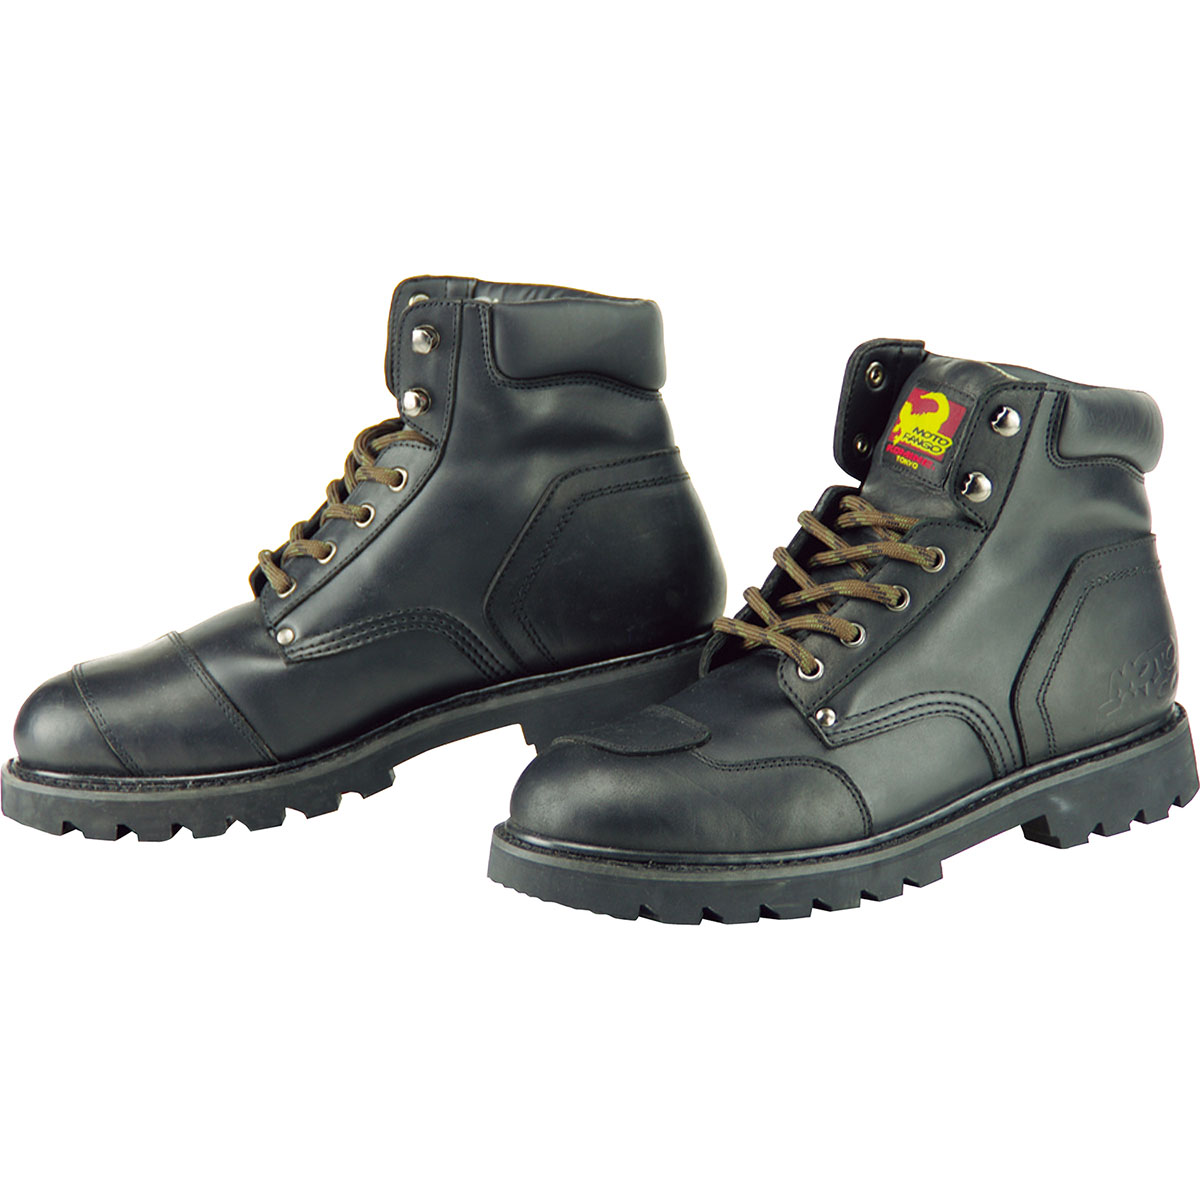 コミネ Komine バイク用 フットウェア シューズ ブーツ Footwear Shoes Boots Sb 21 ショートブーツ ブラック 黒 24 0cm 05 064 Bk 24